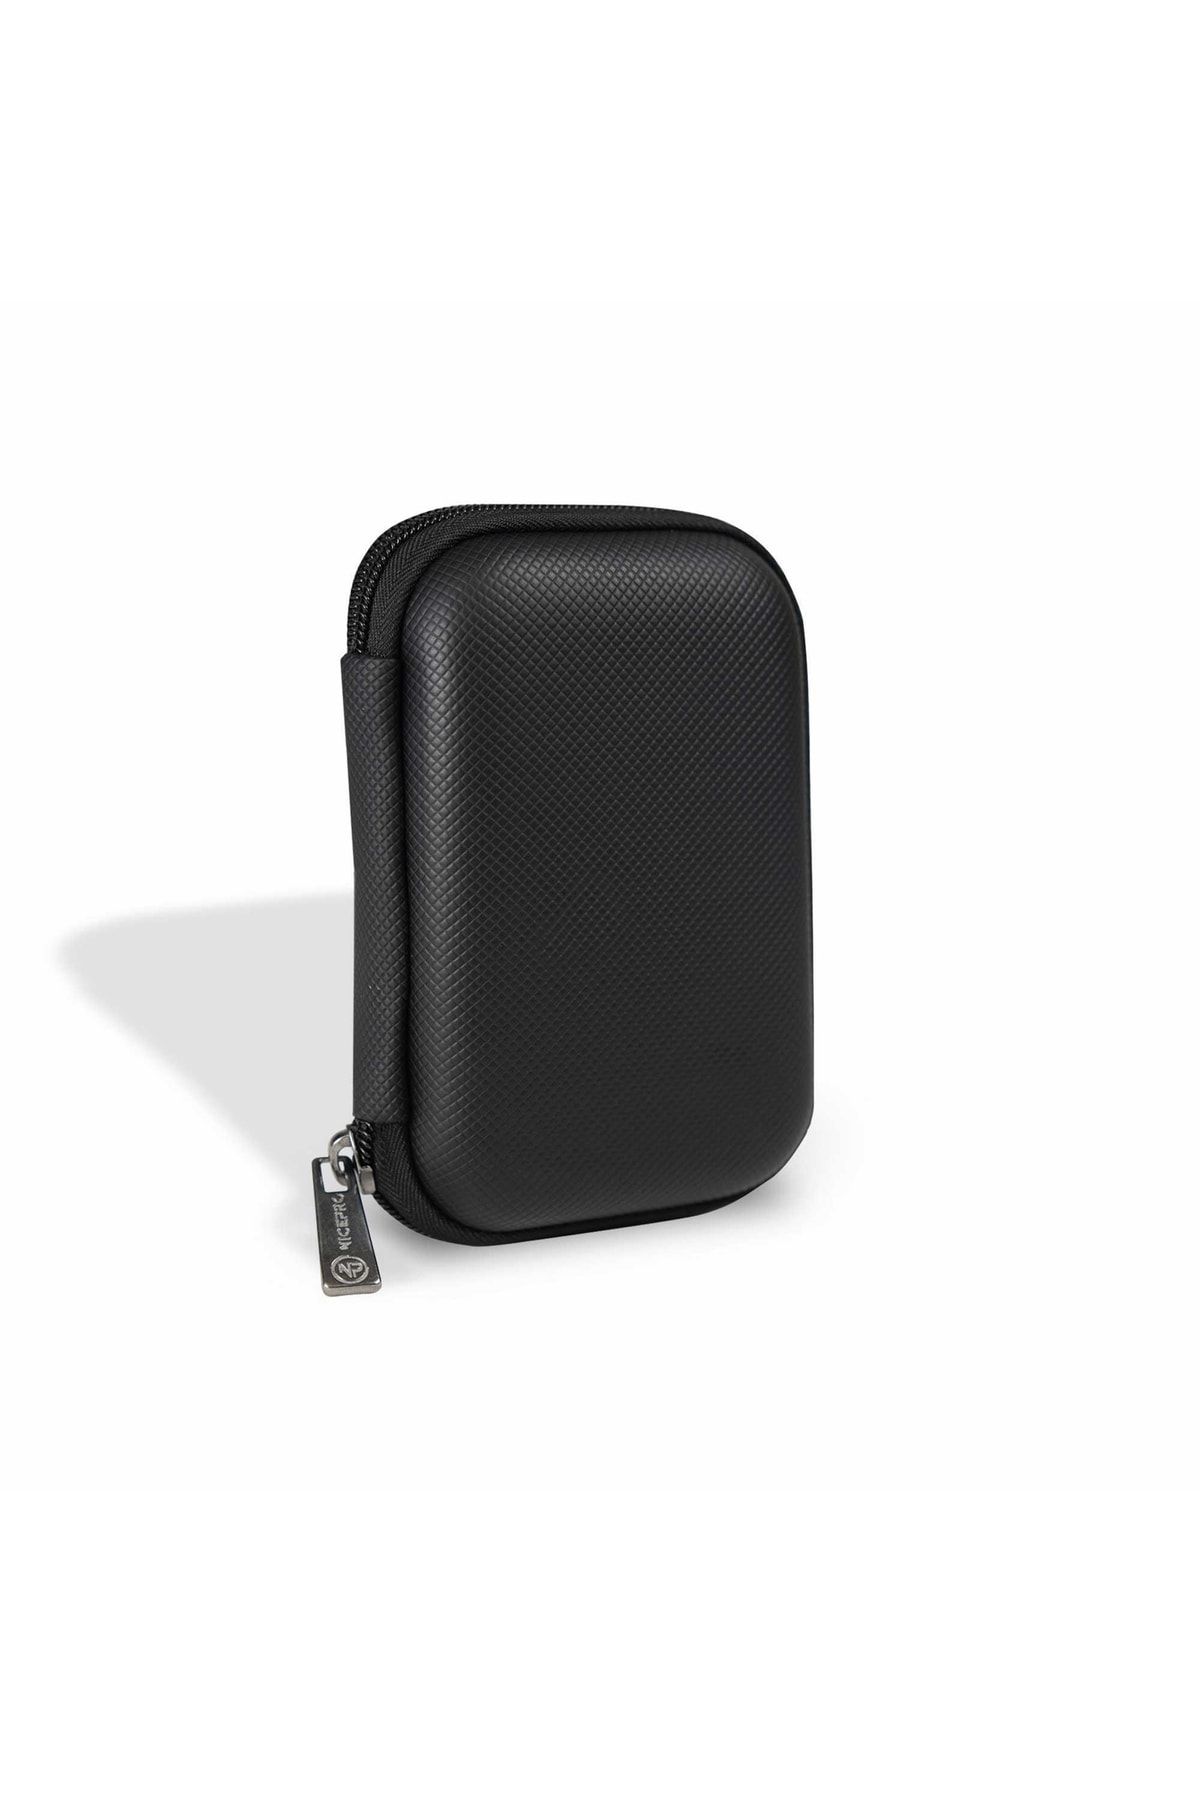 NPO B&b Small Case Ultra Darbe Korumalı,kablo,hdd Ve Aksesuar Için Çok Amaçlı Hardcase Çanta-siyah